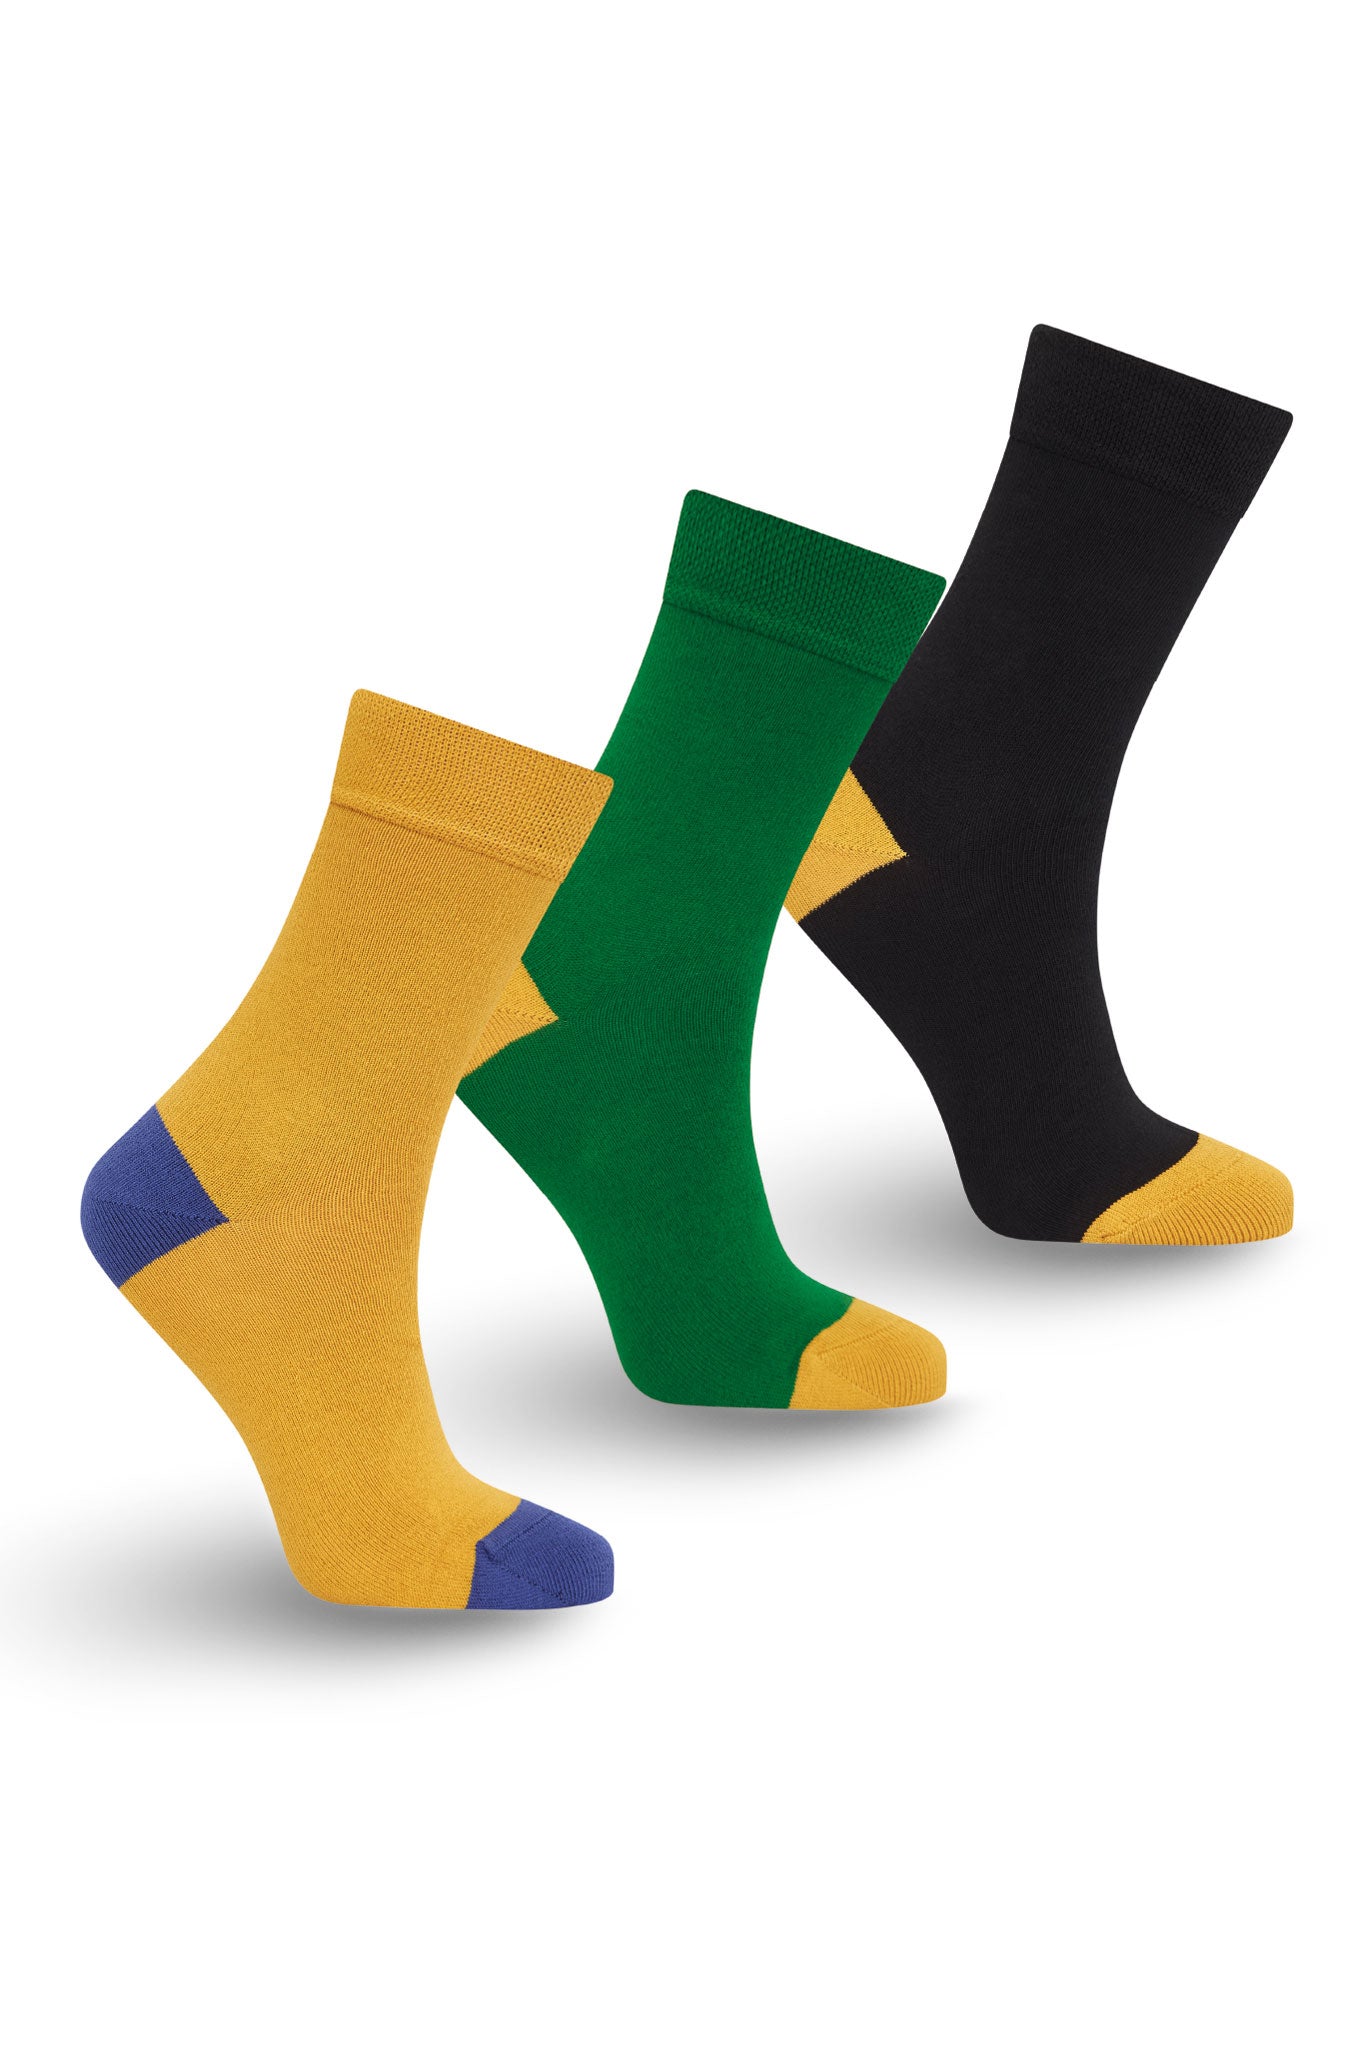 PUNCHY Box Set (x3 pairs) - GOTS Organic Cotton Socks Black/Green/Gold, EUR 37-40